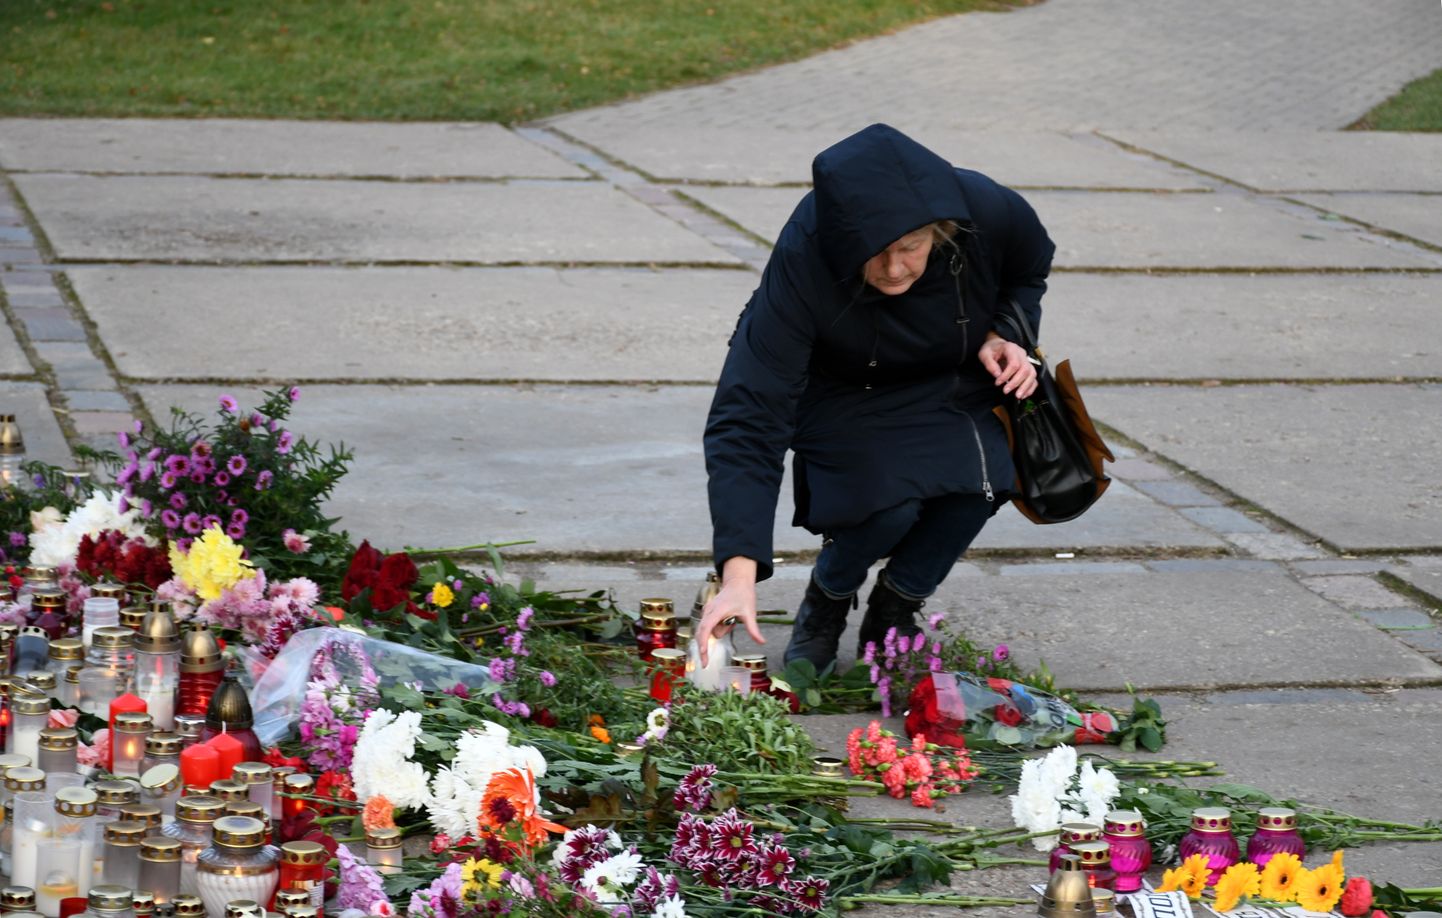 Pēc Daugavpils mēra aicinājuma, pie nojaucamā pieminekļa Otrā pasaules kara padomju karavīriem Slavas skvērā Daugavpilī nolikti ziedi un svecītes.